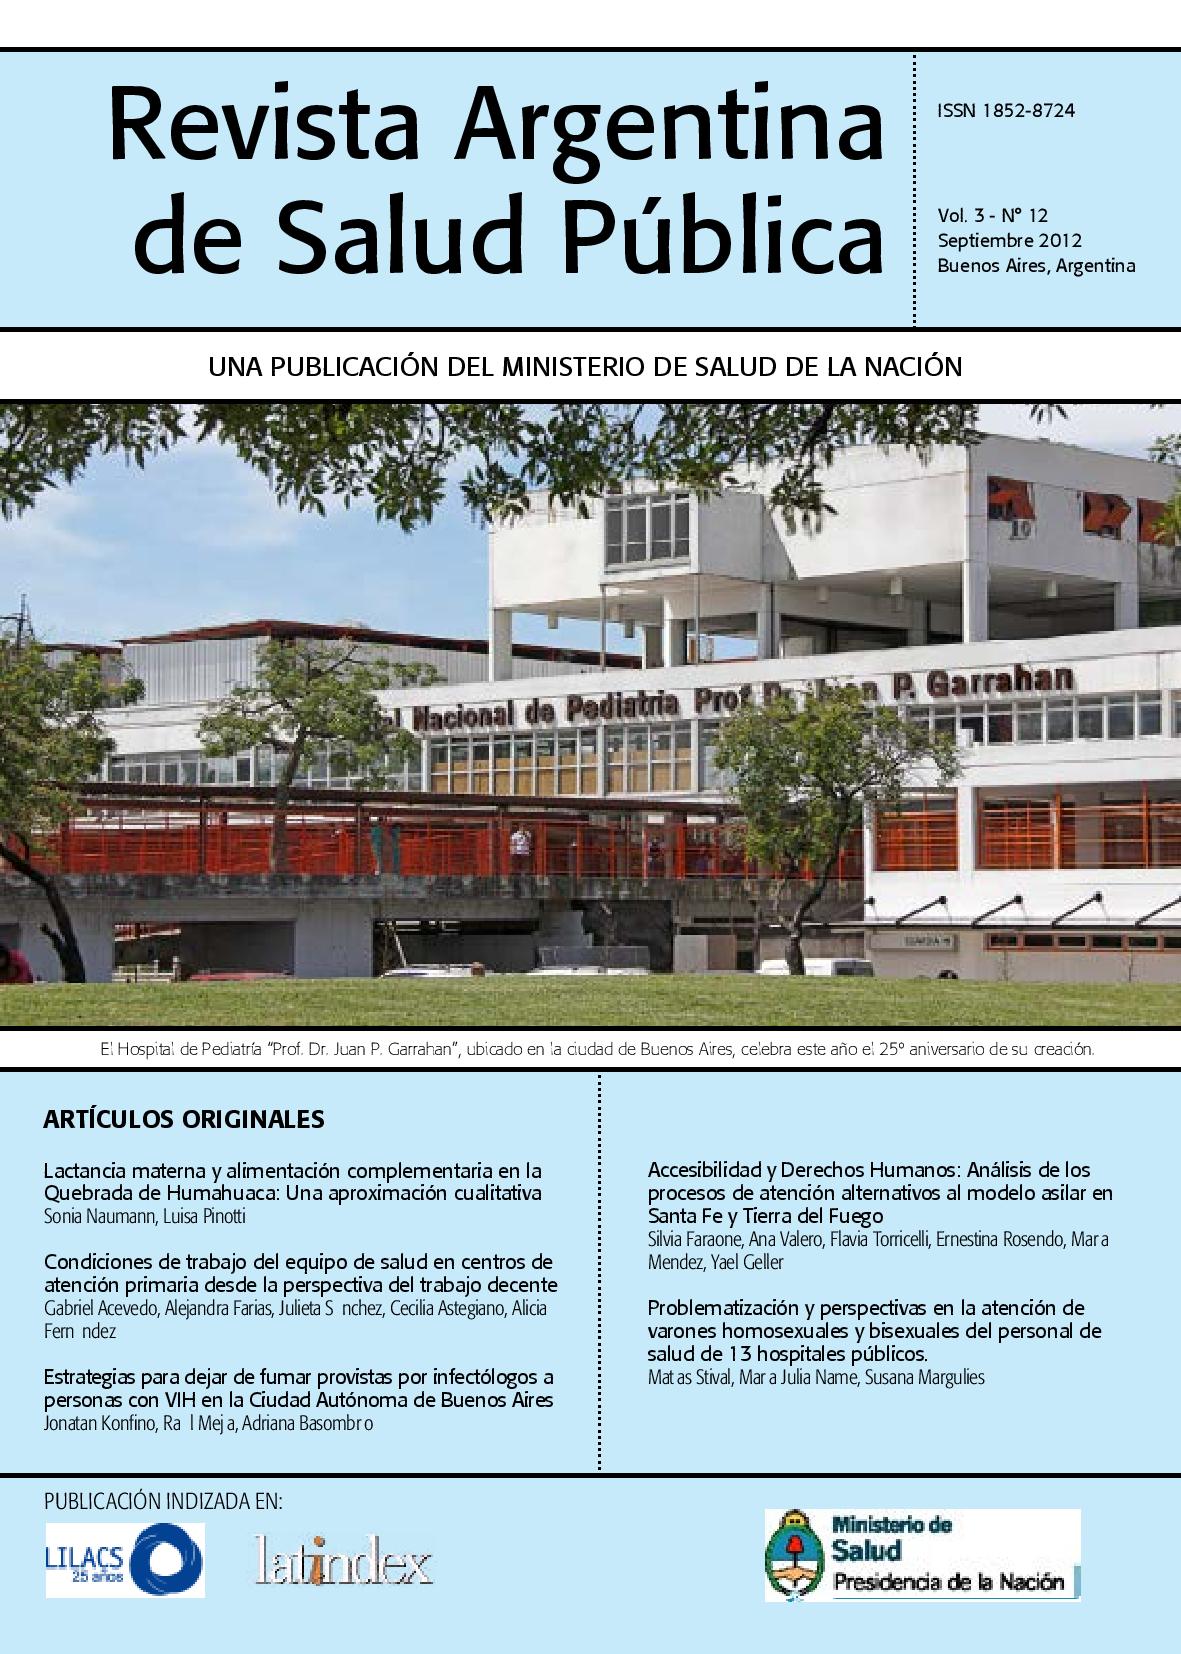 					Ver Vol. 3 Núm. 12 (2012): Revista Argentina de Salud Pública
				